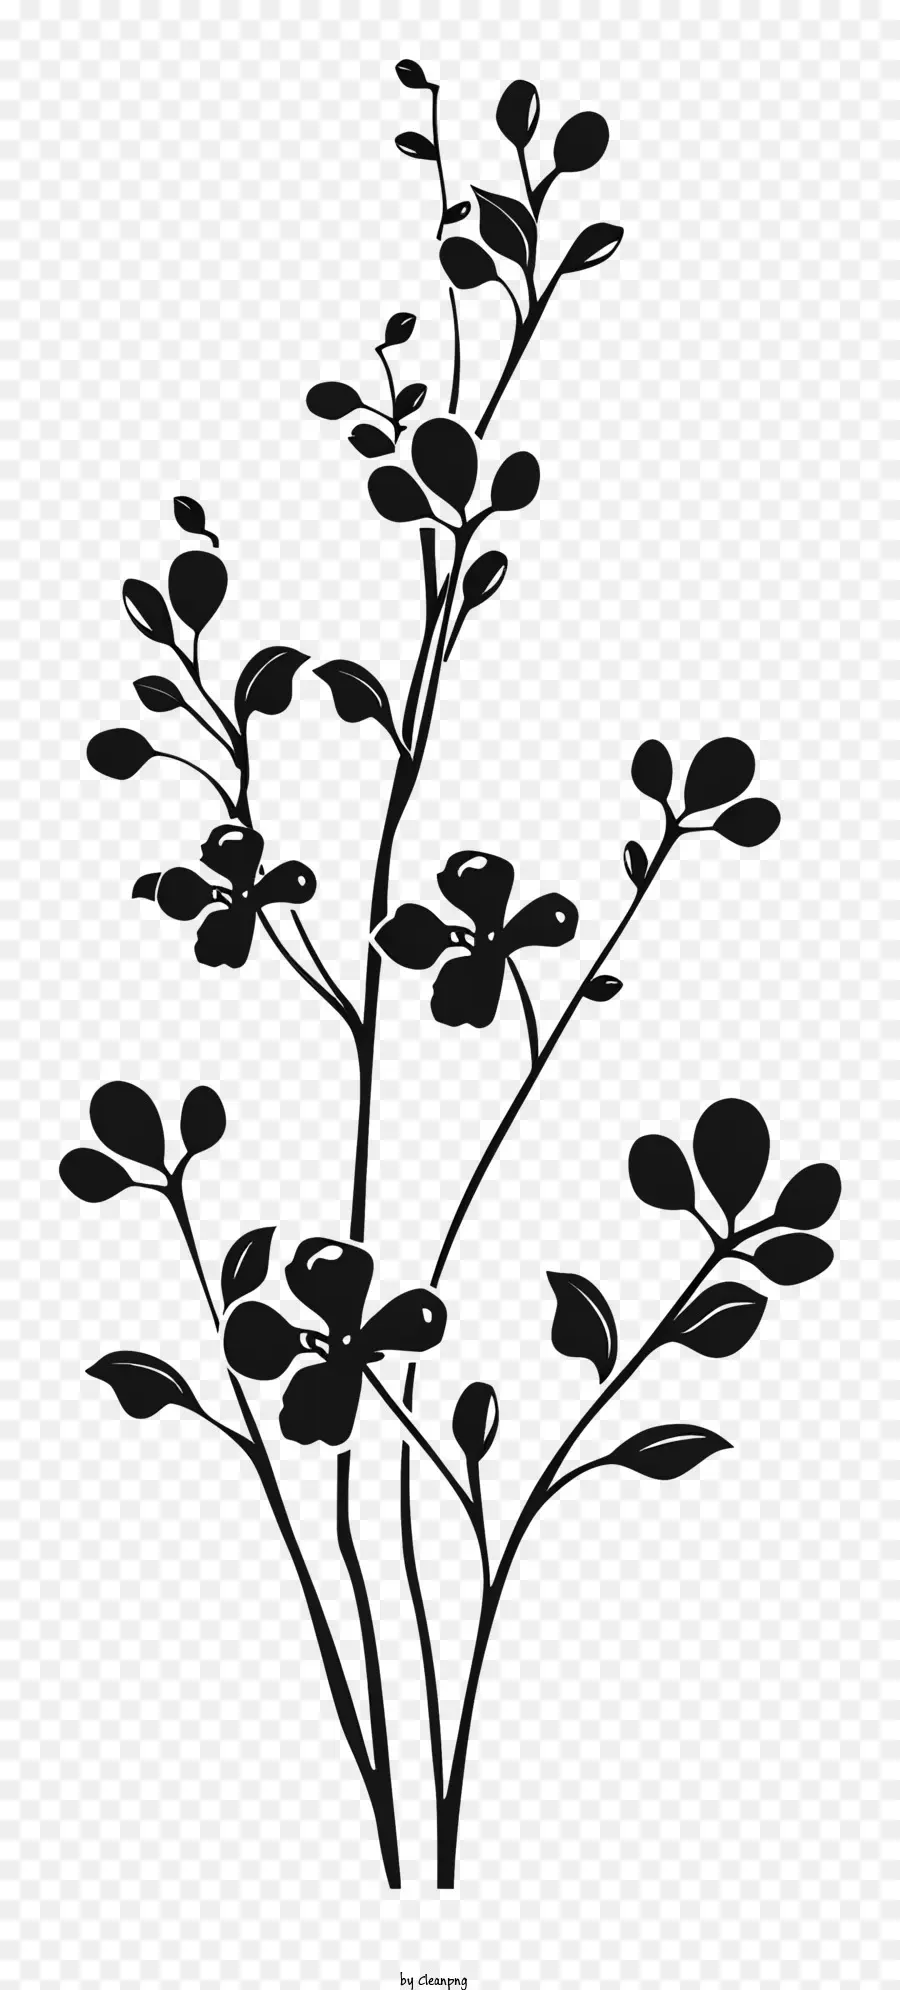 Blume silhouette - Silhouette Ast mit Blättern in Schwarz und Weiß